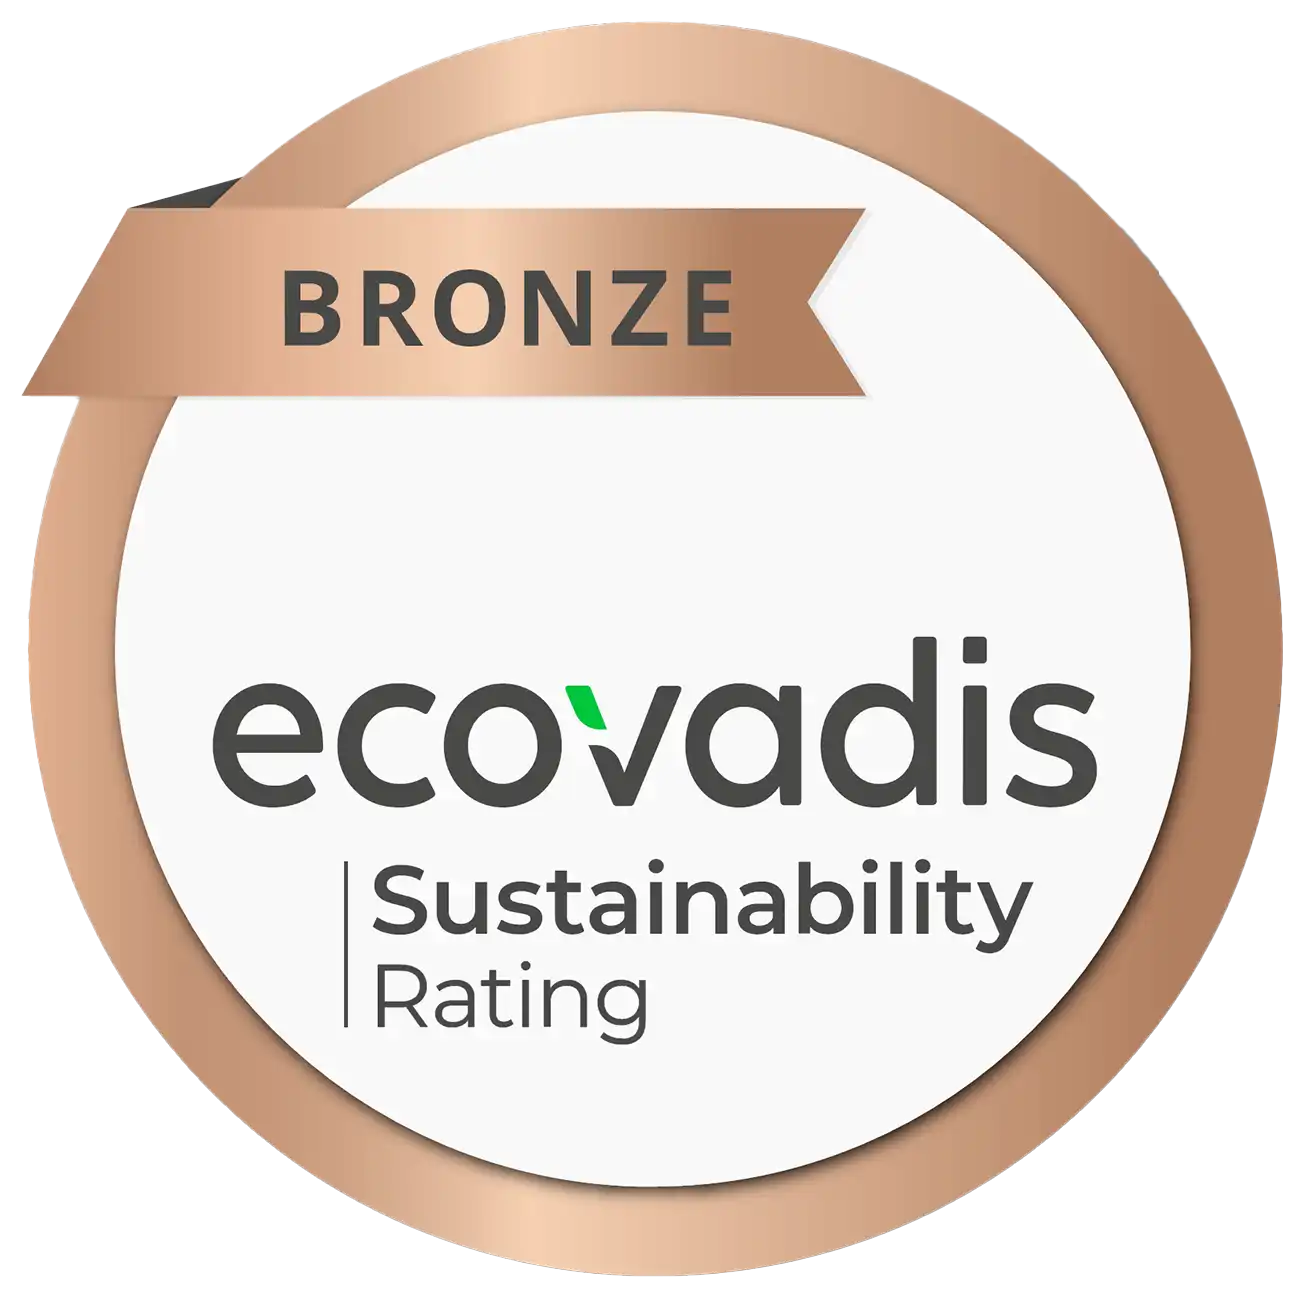 Médaille de bronze ecovadys, symbole de reconnaissance pour les efforts en matière de durabilité et de responsabilité sociale des entreprises